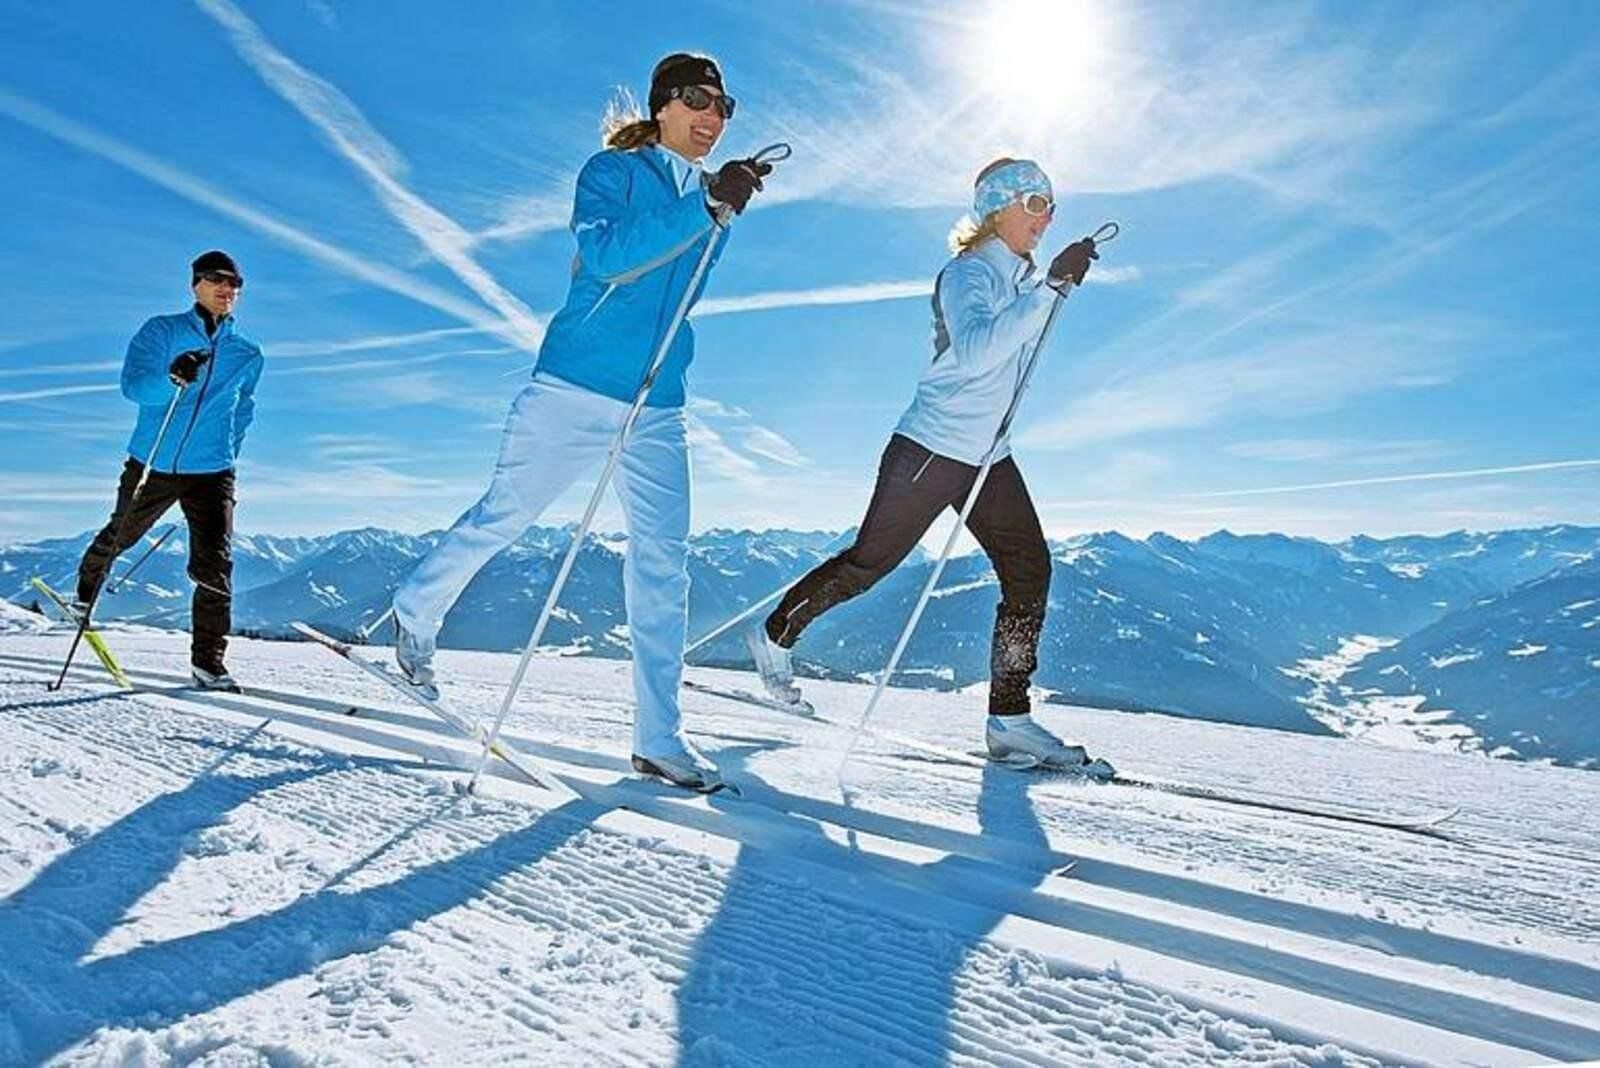 Активным отдыхом является. Зимний спорт. Ходьба на лыжах. Занятия спортом на свежем воздухе. Горнолыжный спорт.